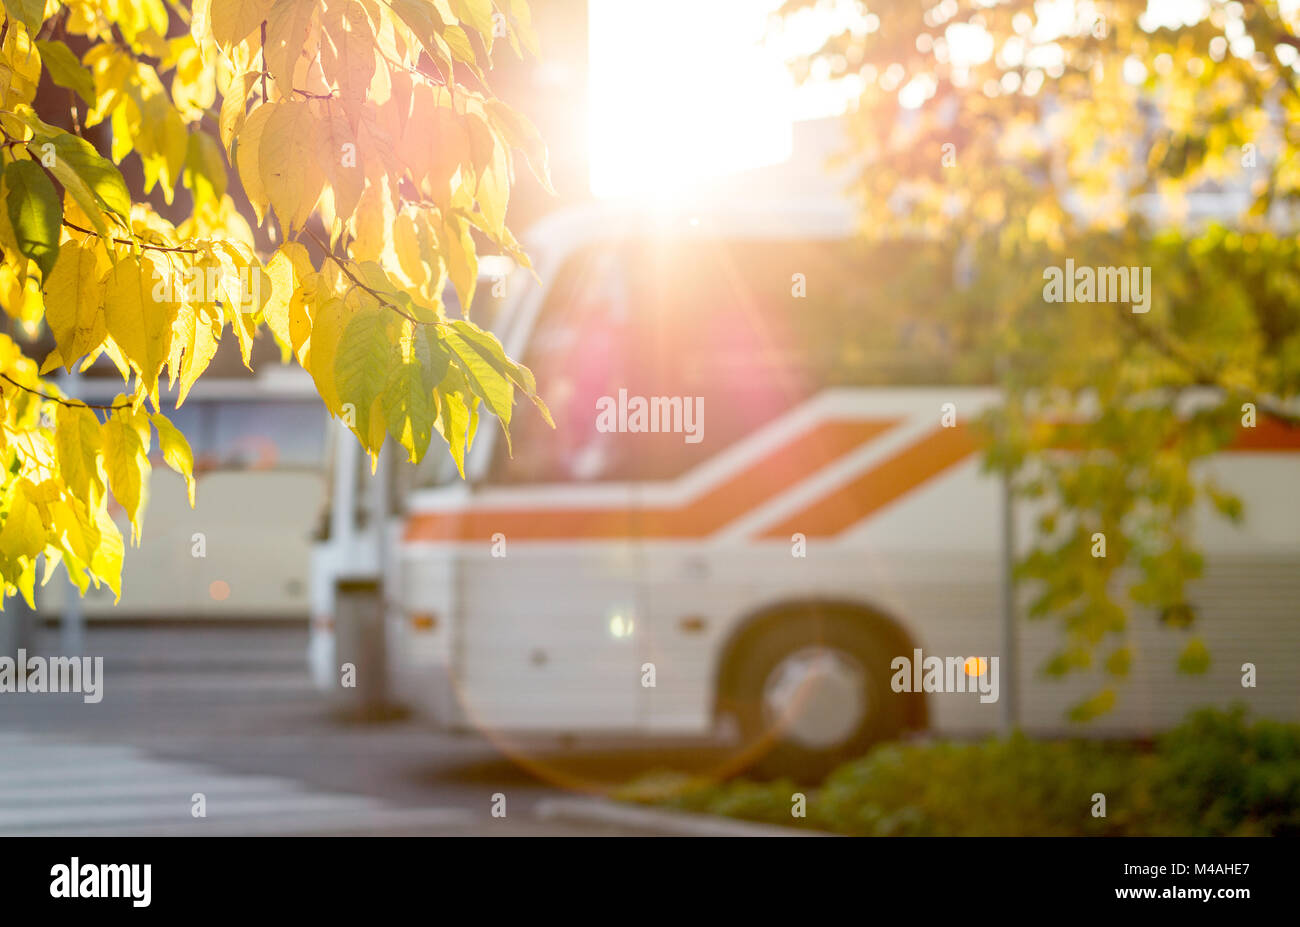 En la estación de autobuses, enmarcadas por la coloración de las hojas de otoño de los árboles. Sunny concepto de transporte público. Foto de stock